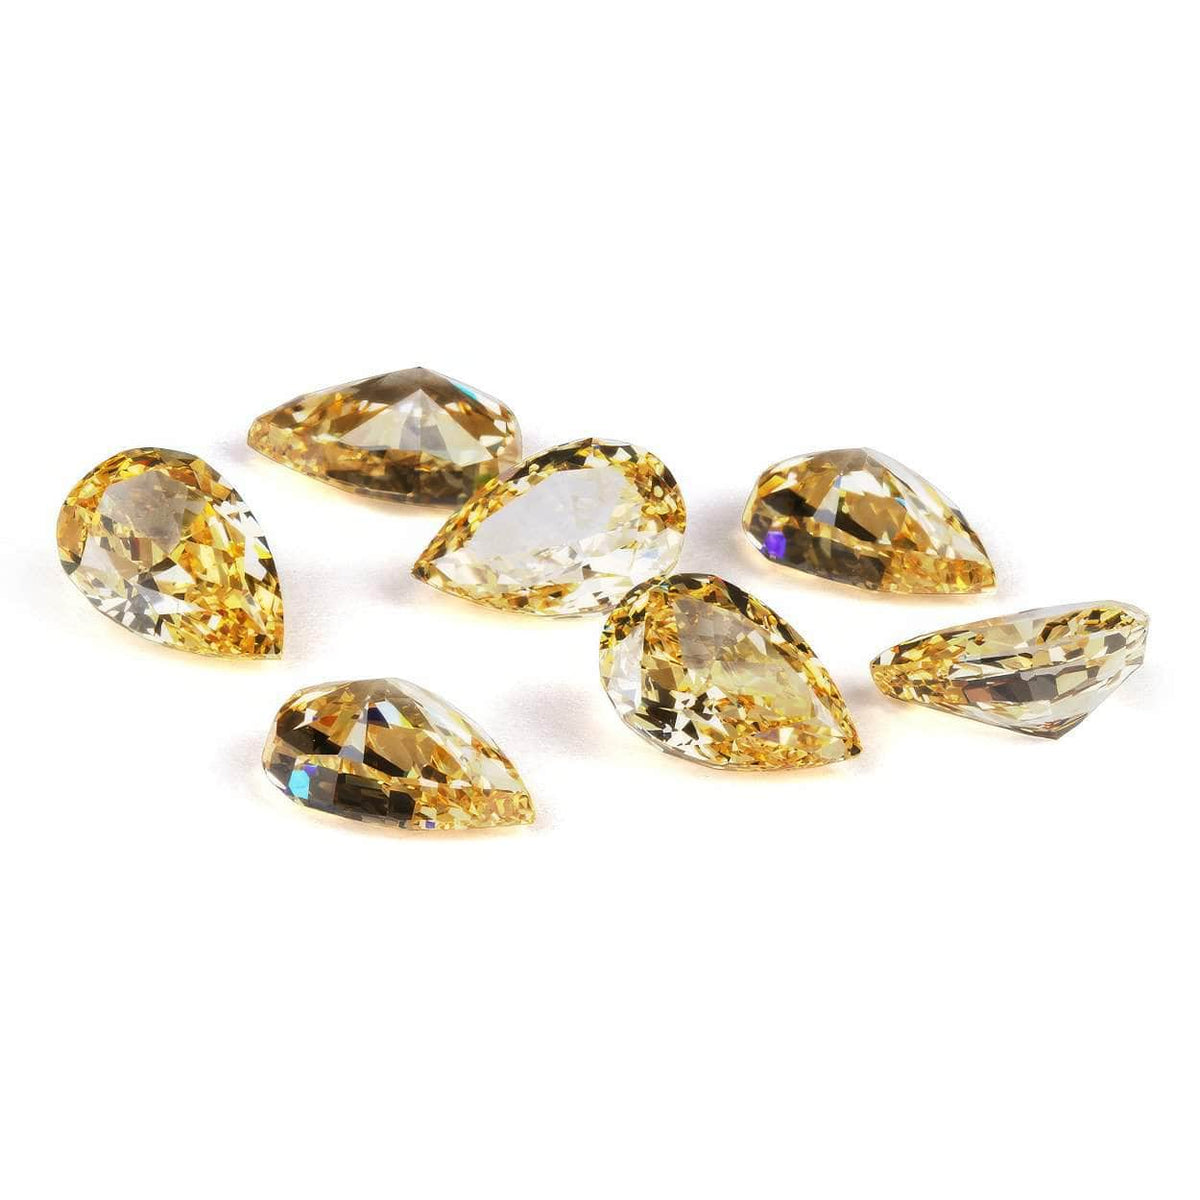 3 Set Canary Yellow Pear Cut Lab Grown Diamond Gemstone 3*5mm / Canary / Pear